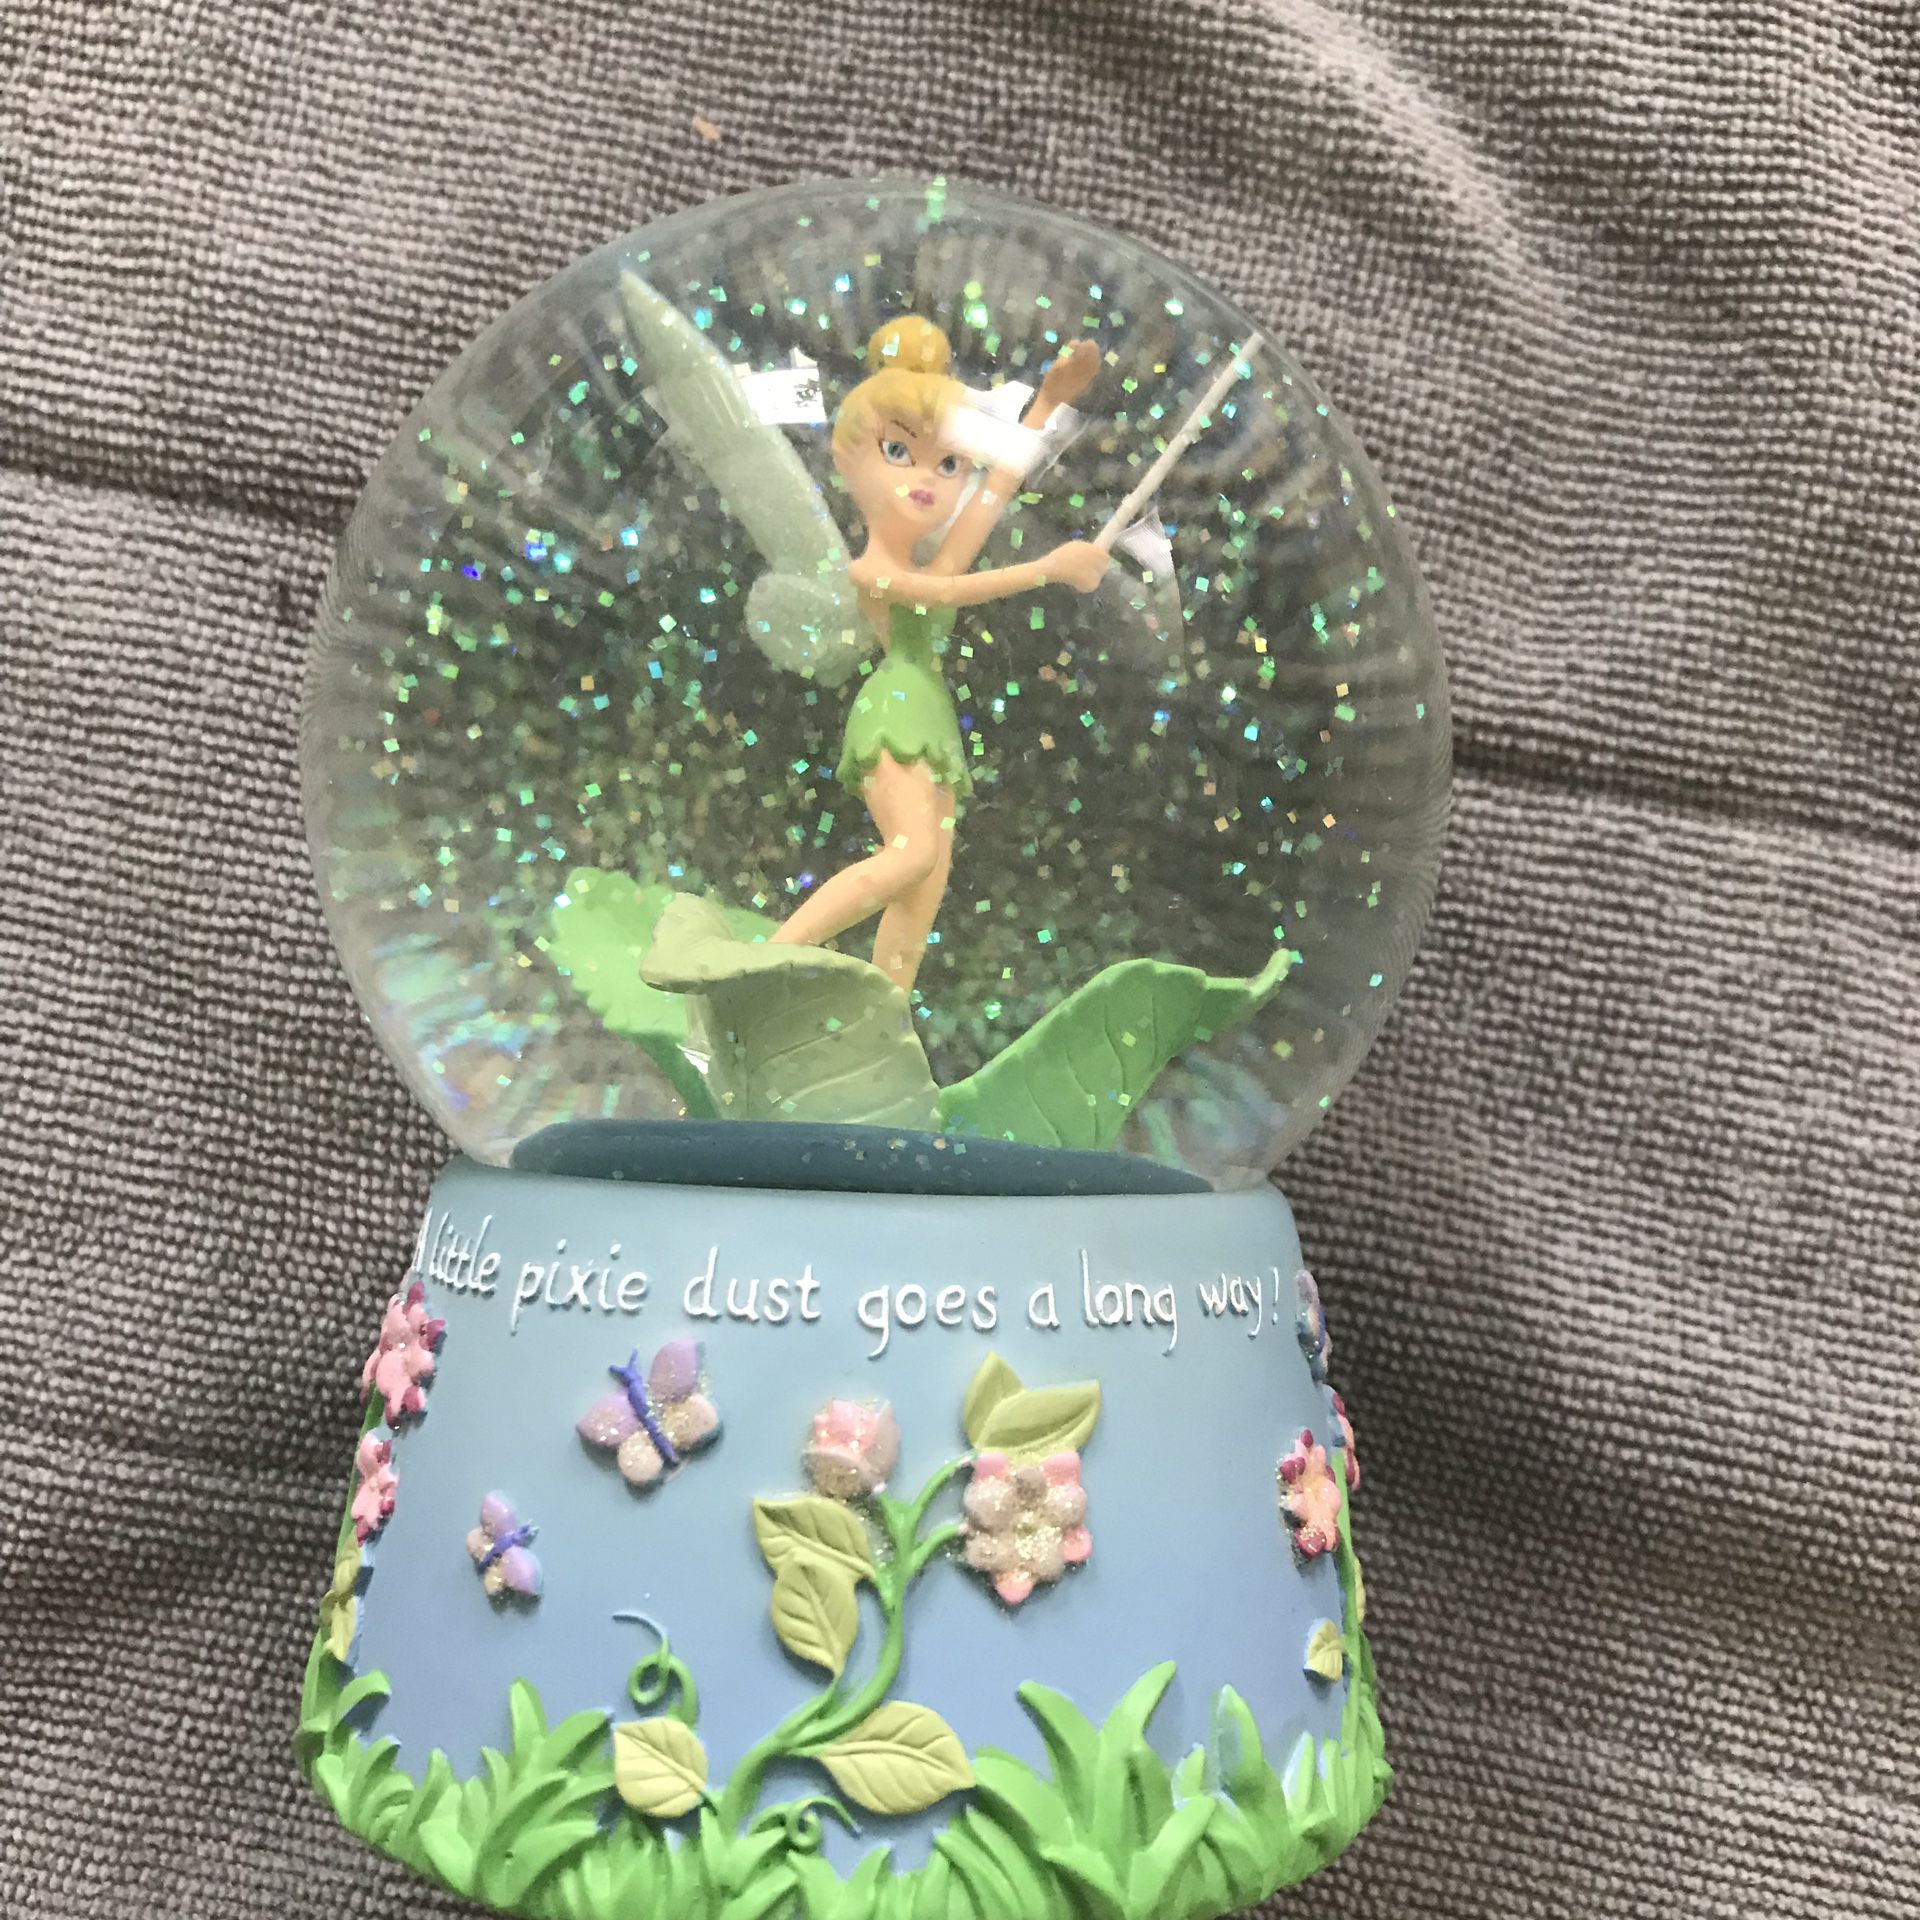 Disney Musical Glitter Globe - Tinkerbell